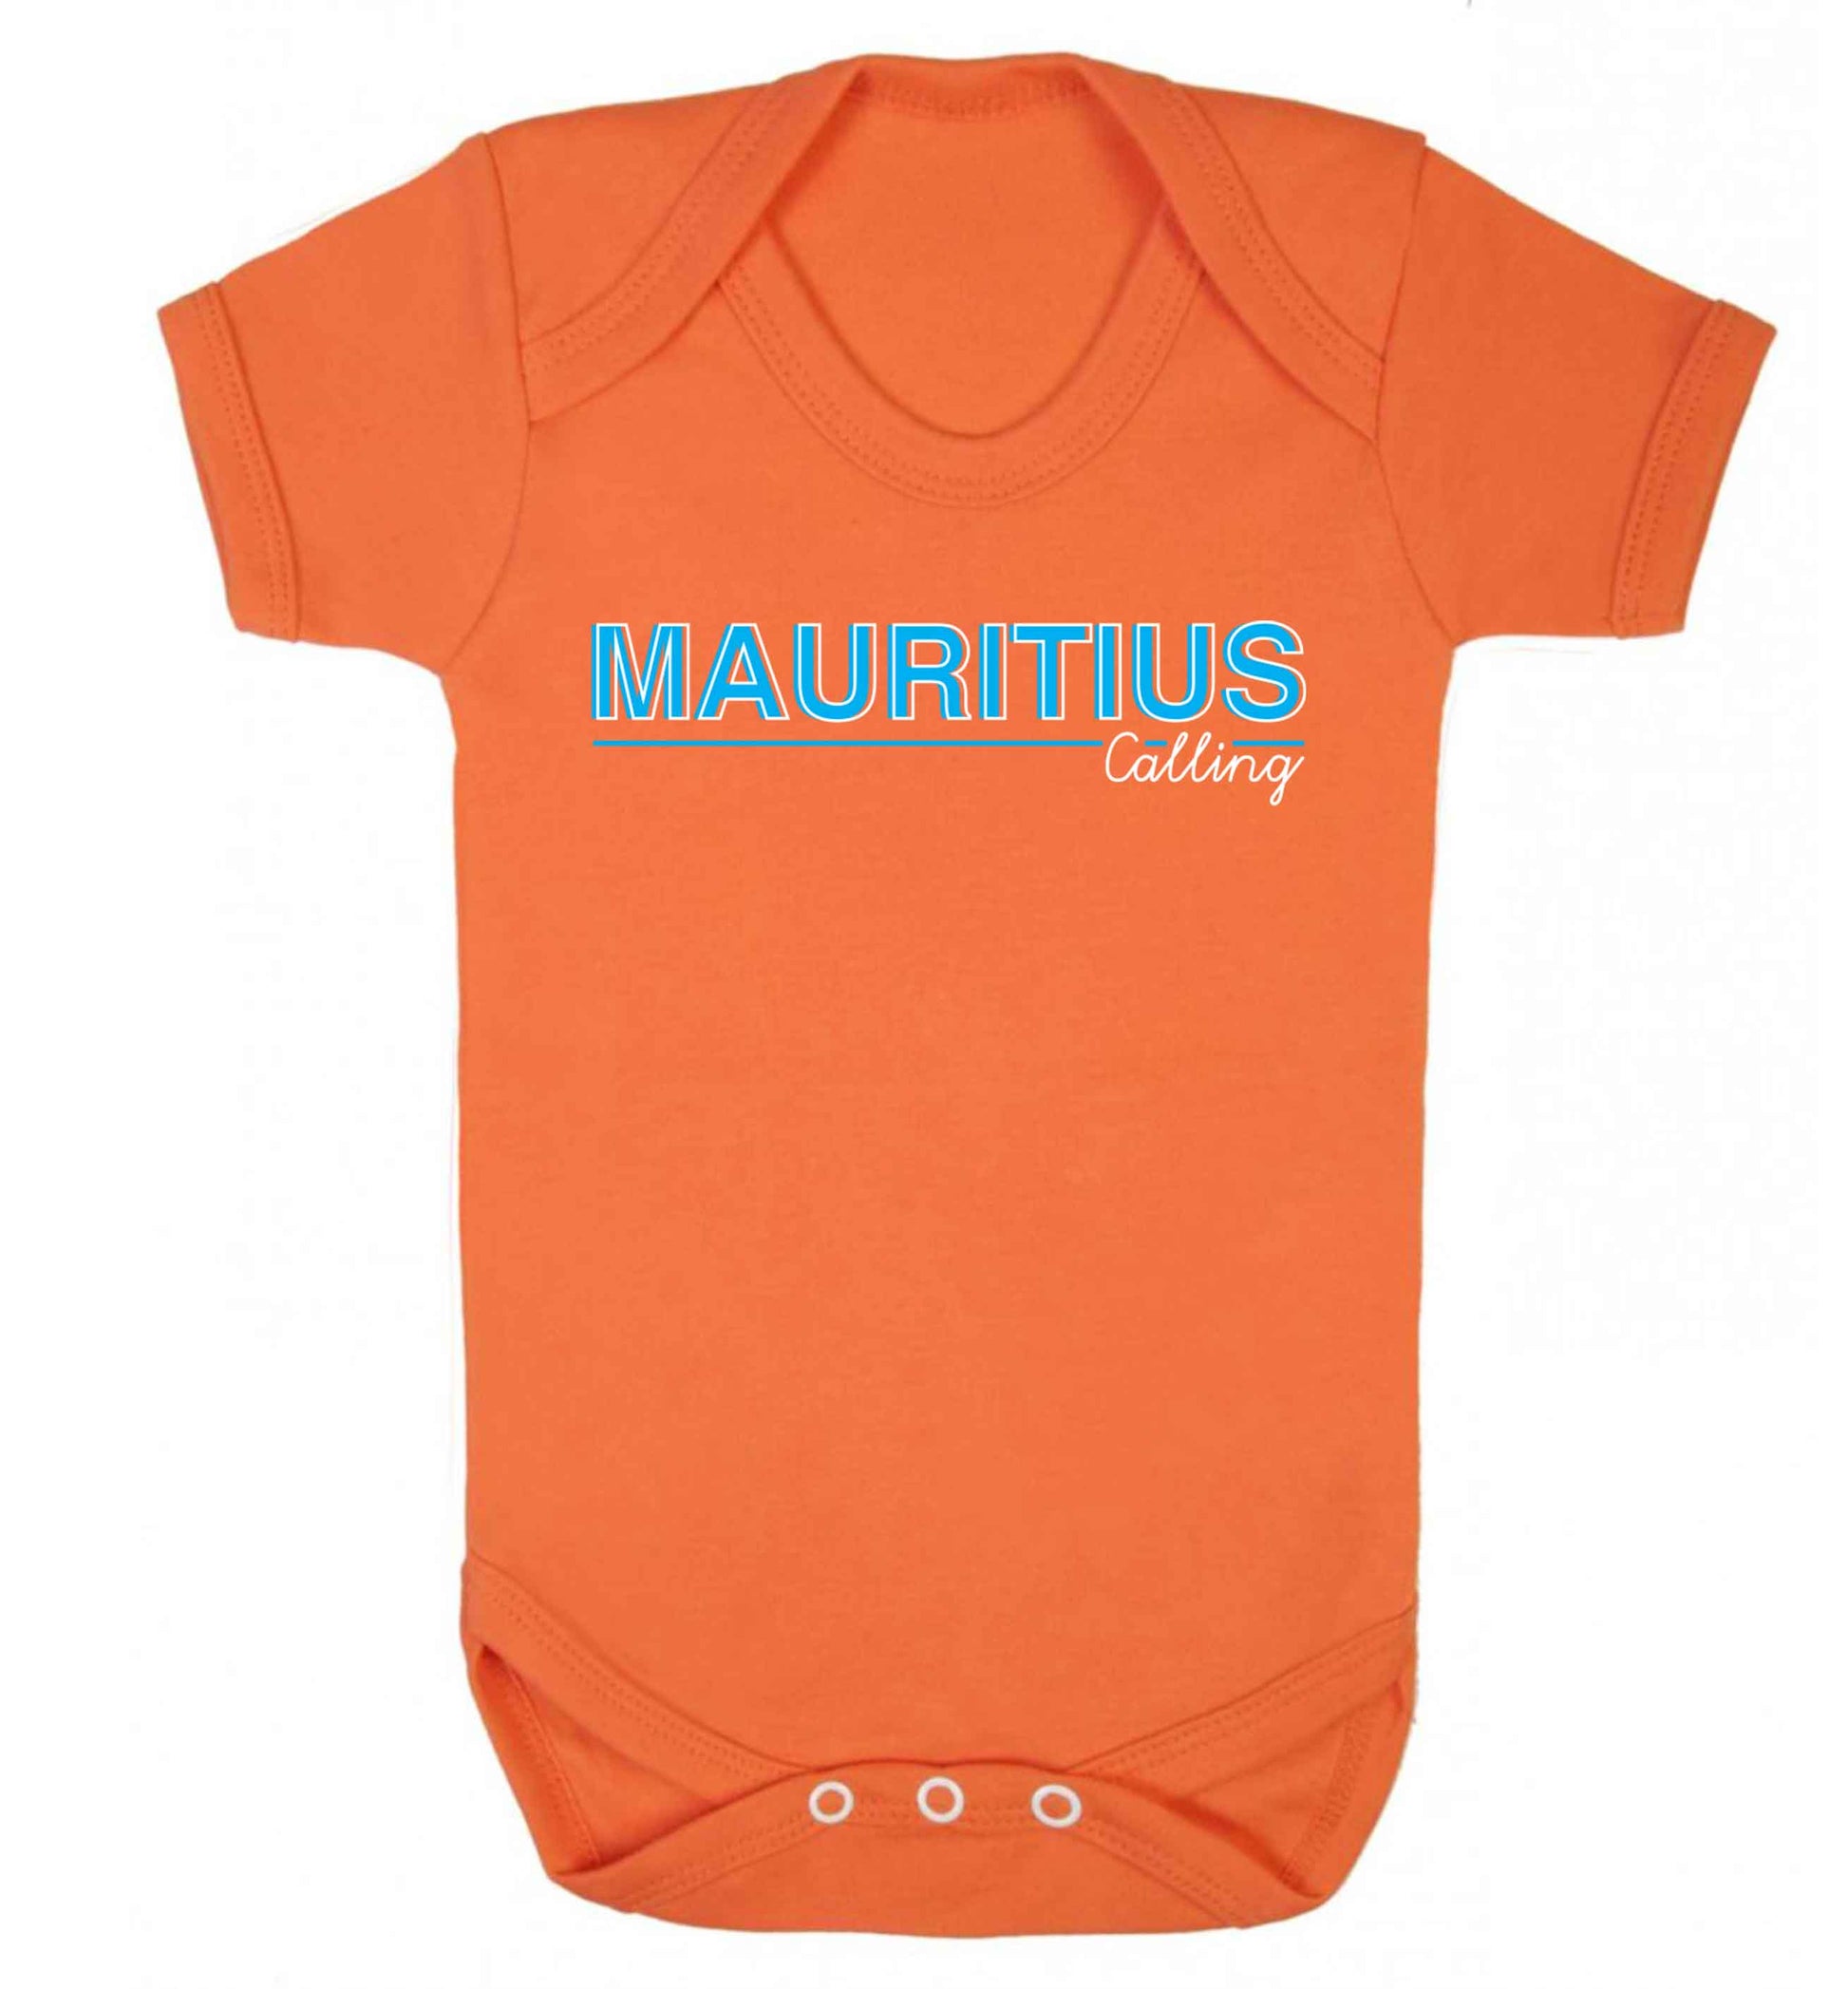 Mauritius calling Baby Vest orange 18-24 months